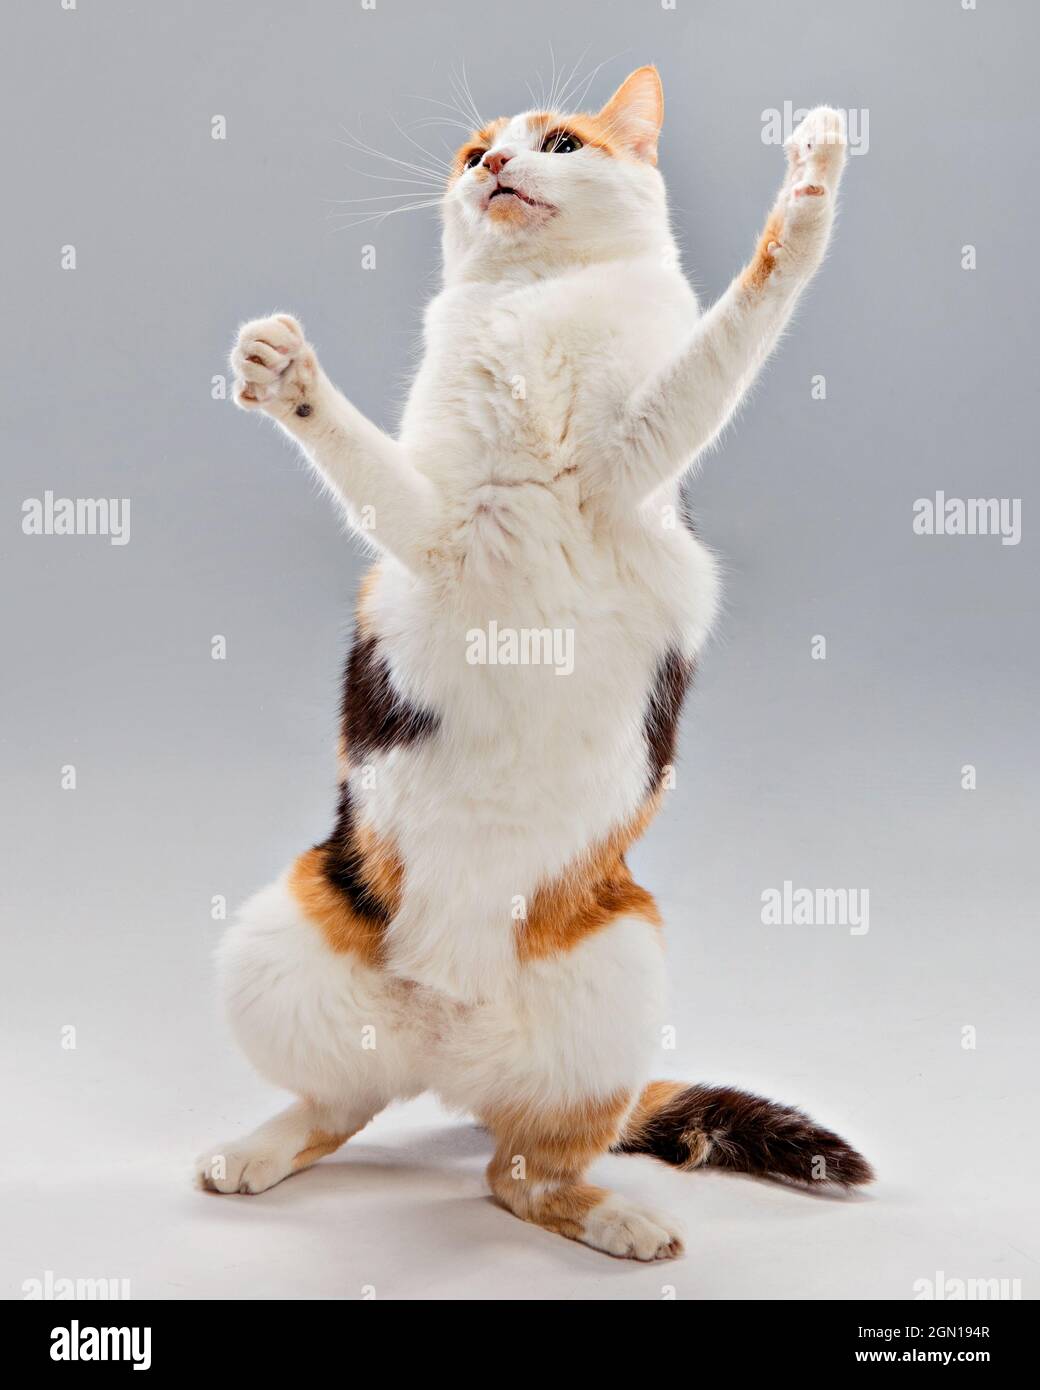 Ritratto da studio di un gatto calico in piedi su due gambe con un'espressione umoristica. Foto Stock